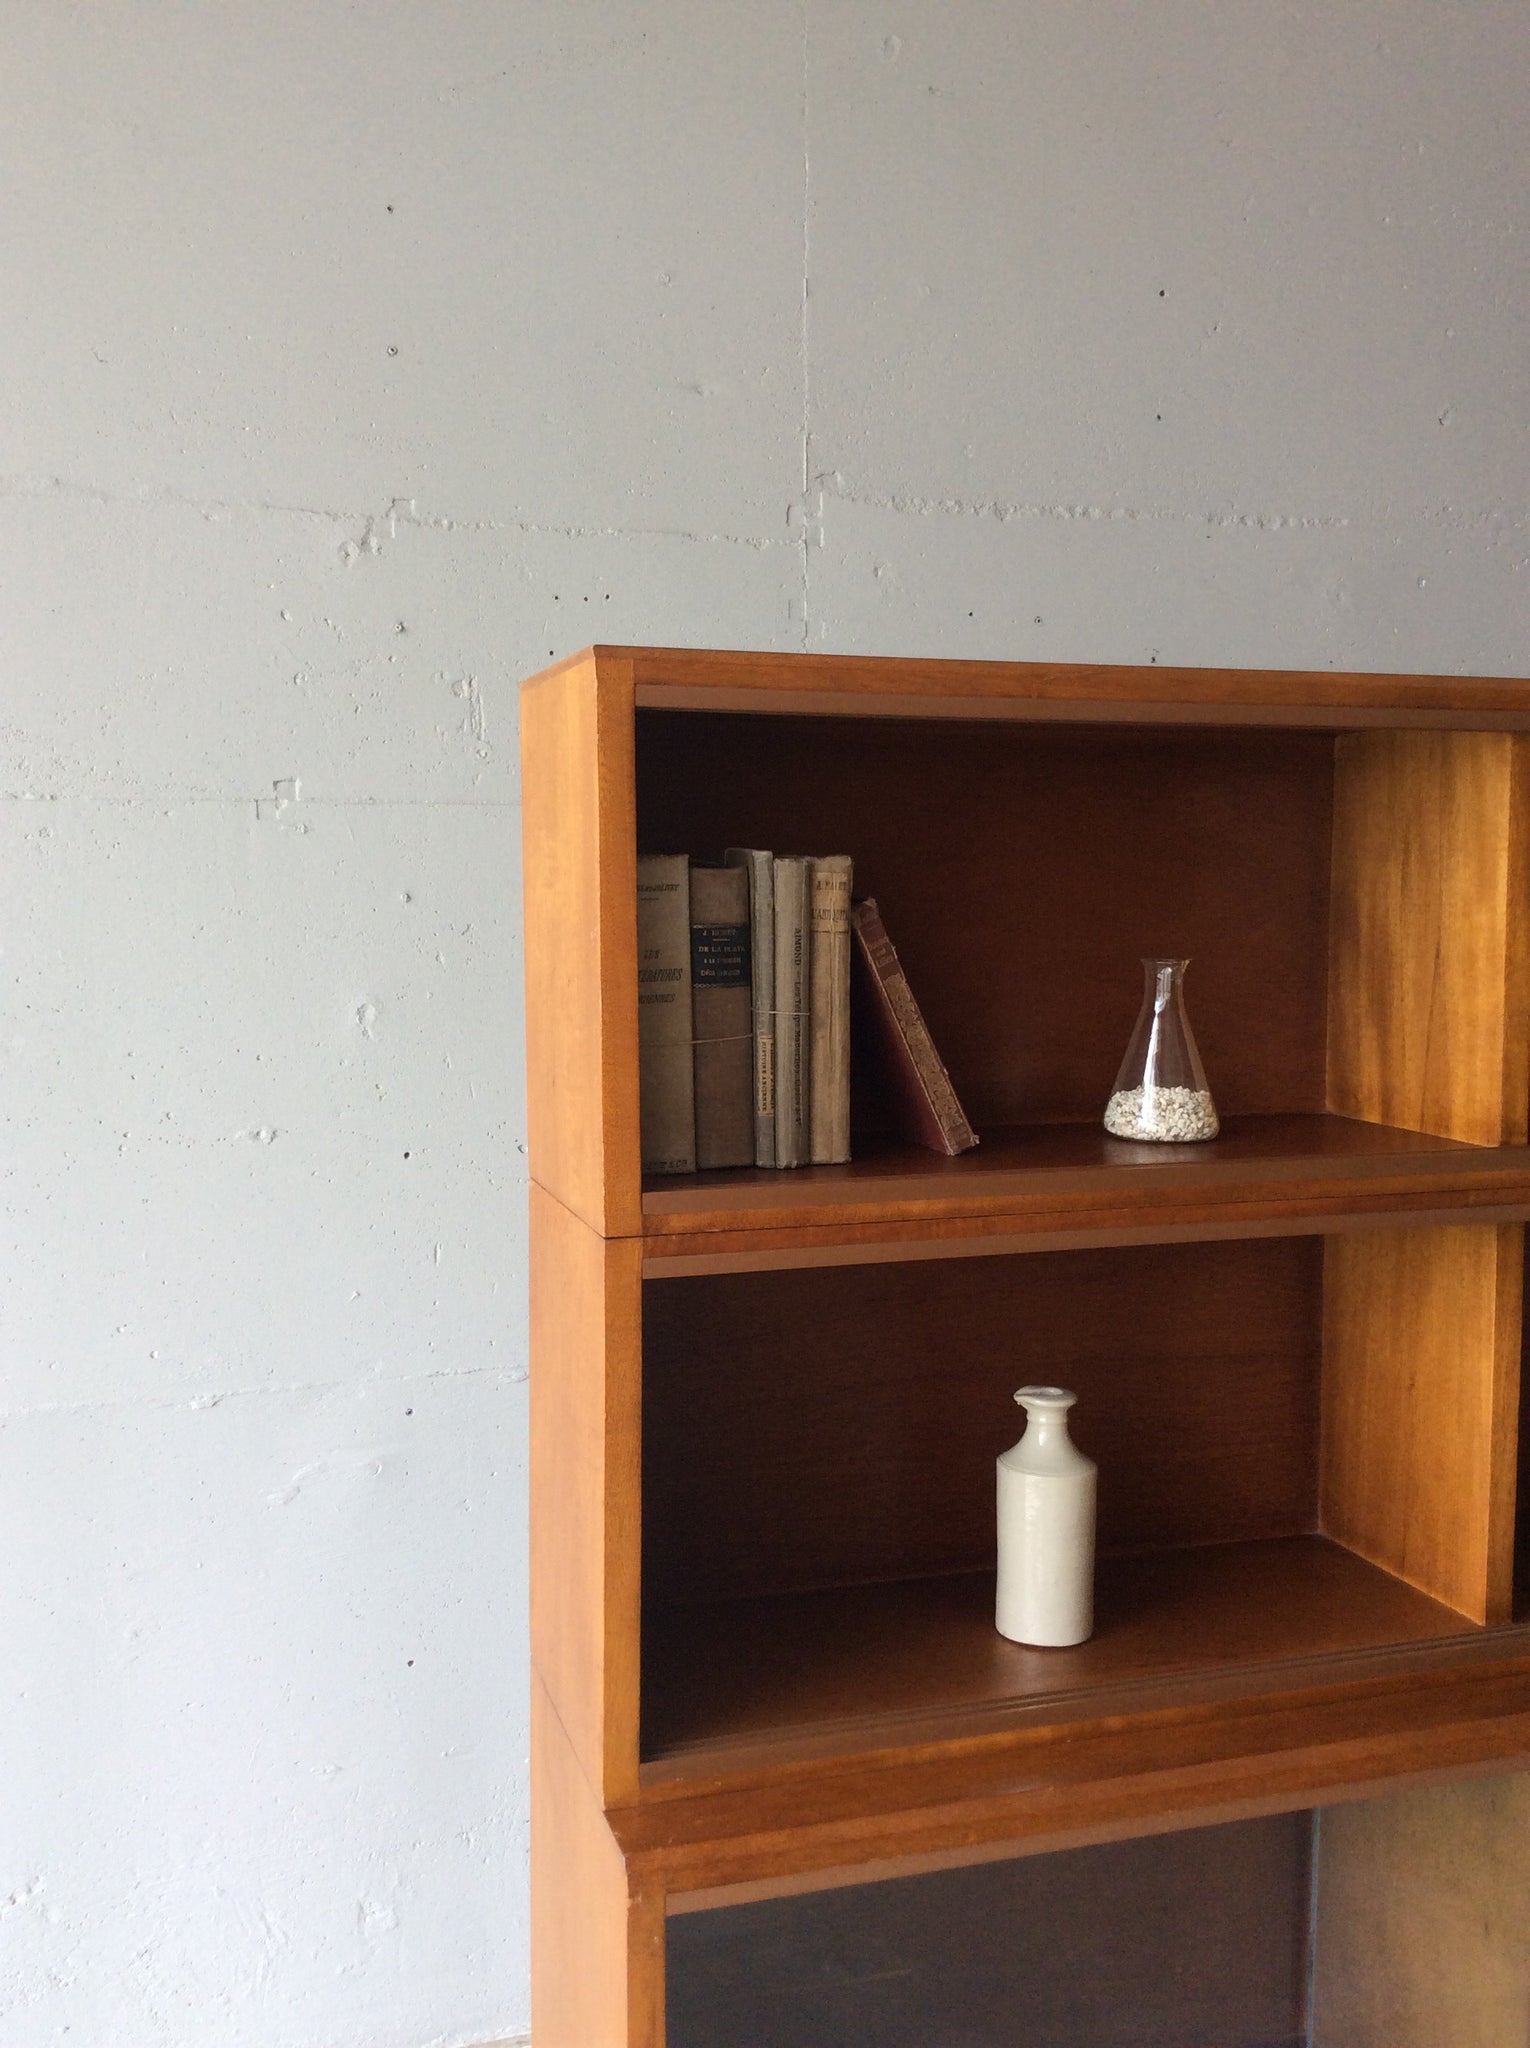 シンプレックス ブックケース ストレージ カップボード / simplex bookcase storage cupboard #0114